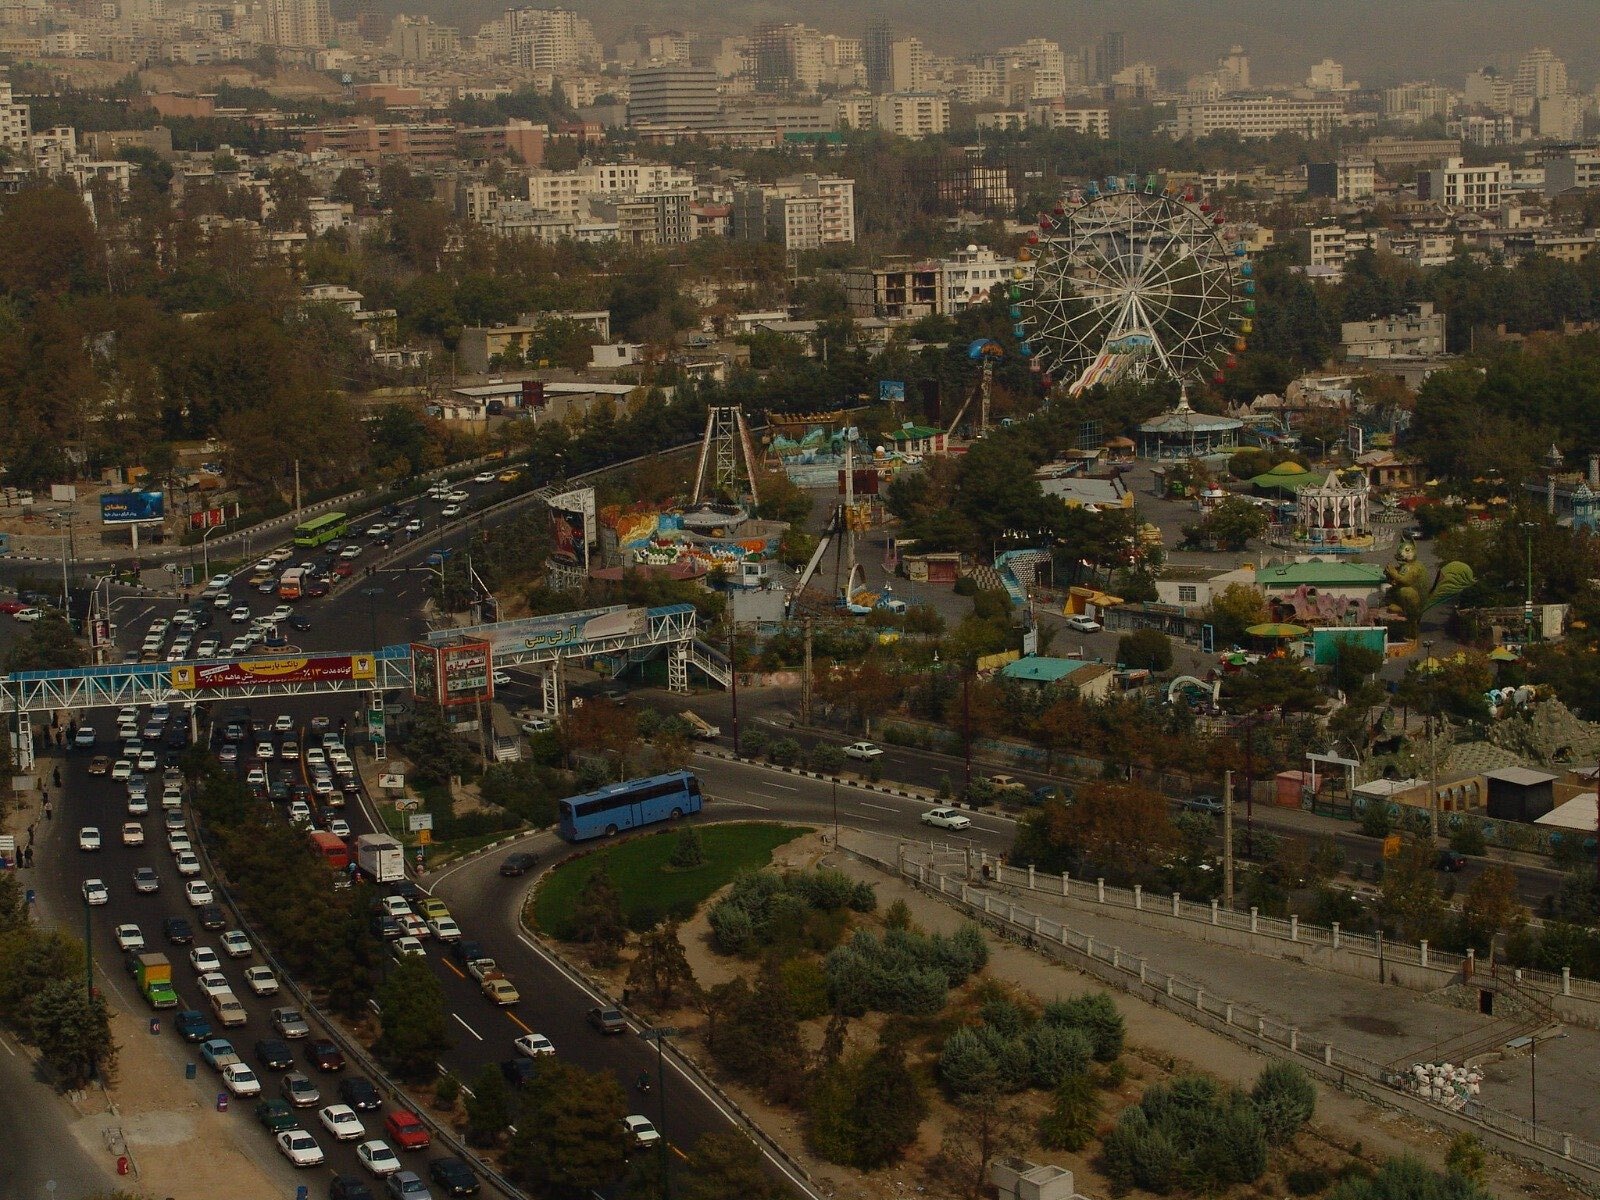 مکان رؤیایی شمال تهران که همه مردم مجذوبش بودند + عکس